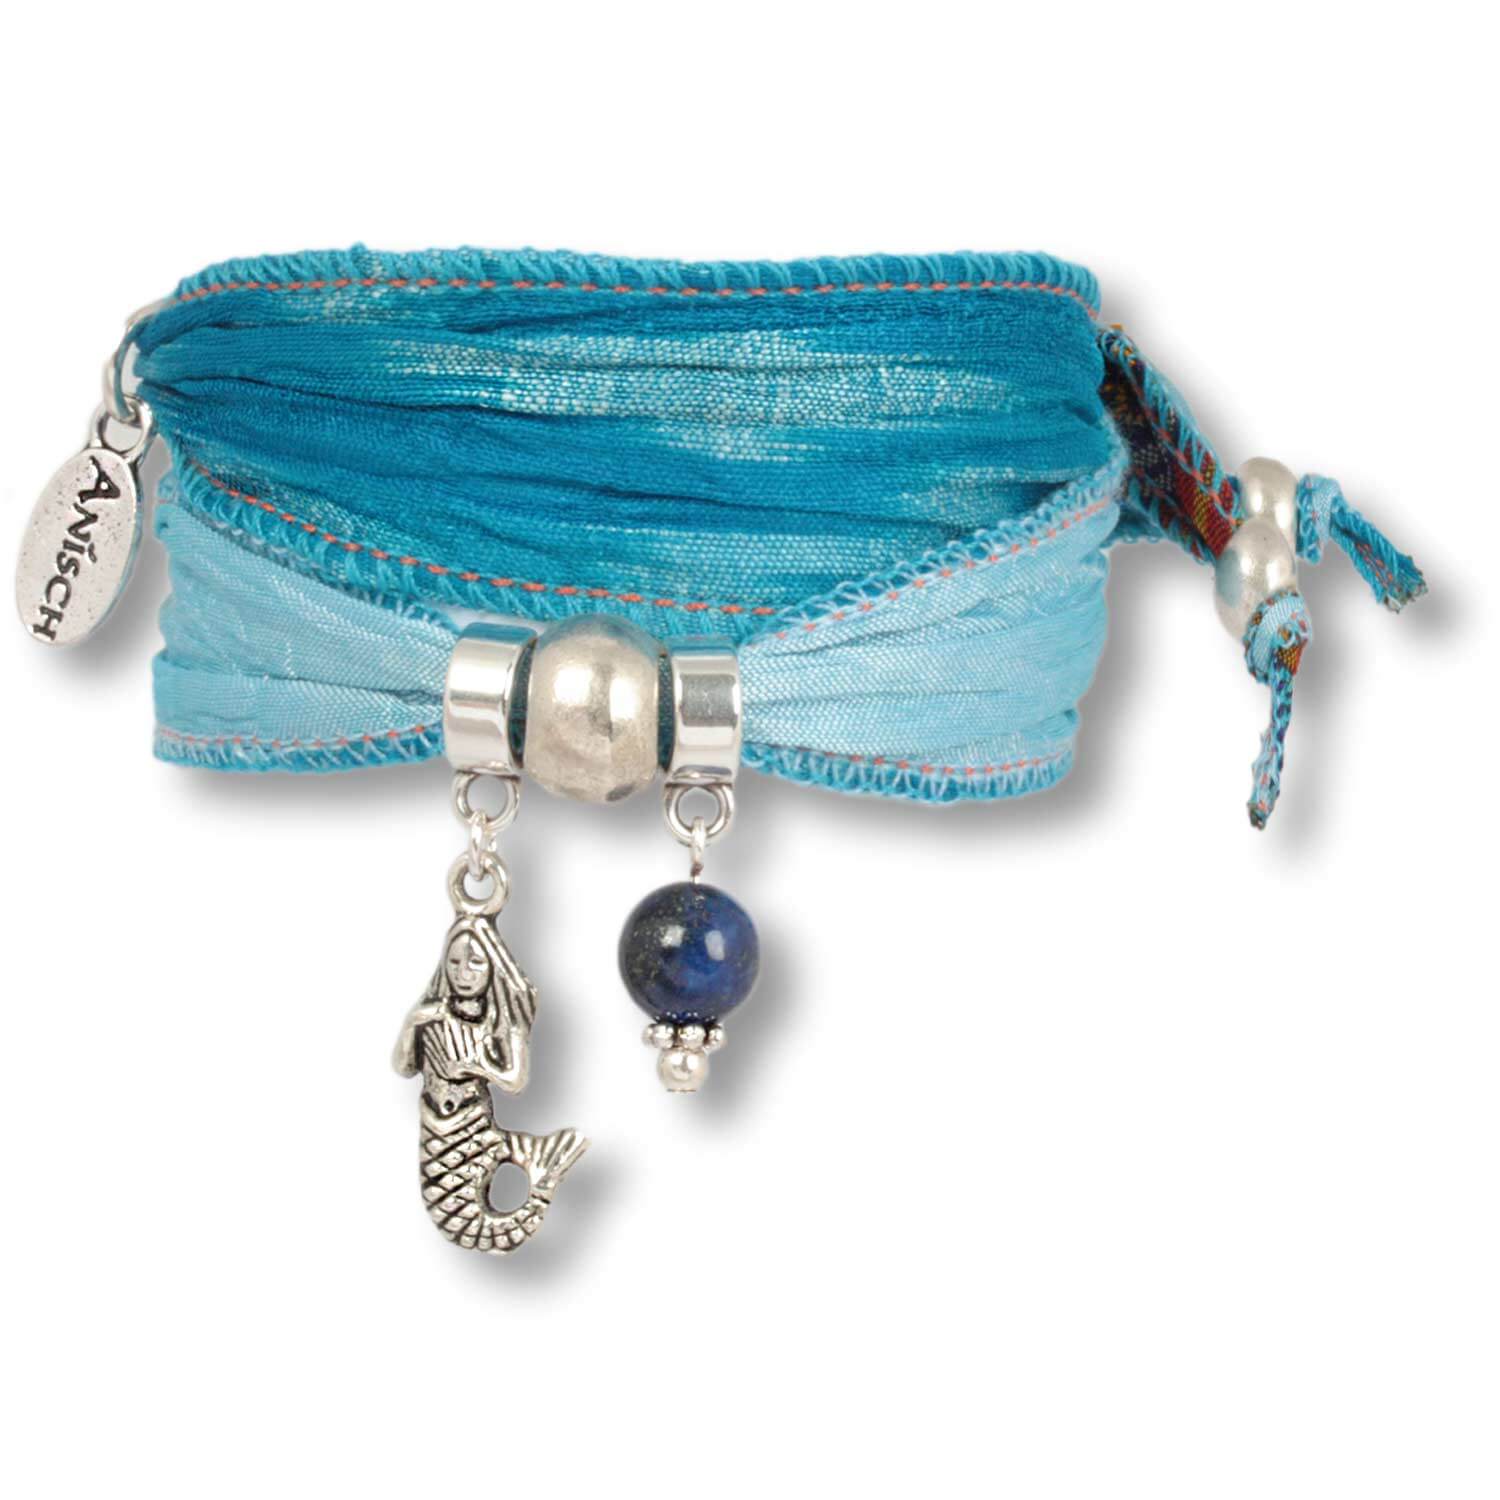 Caribic Blue - Ocean Daughters lucky bracelet made of indian saris with lapis lazuli